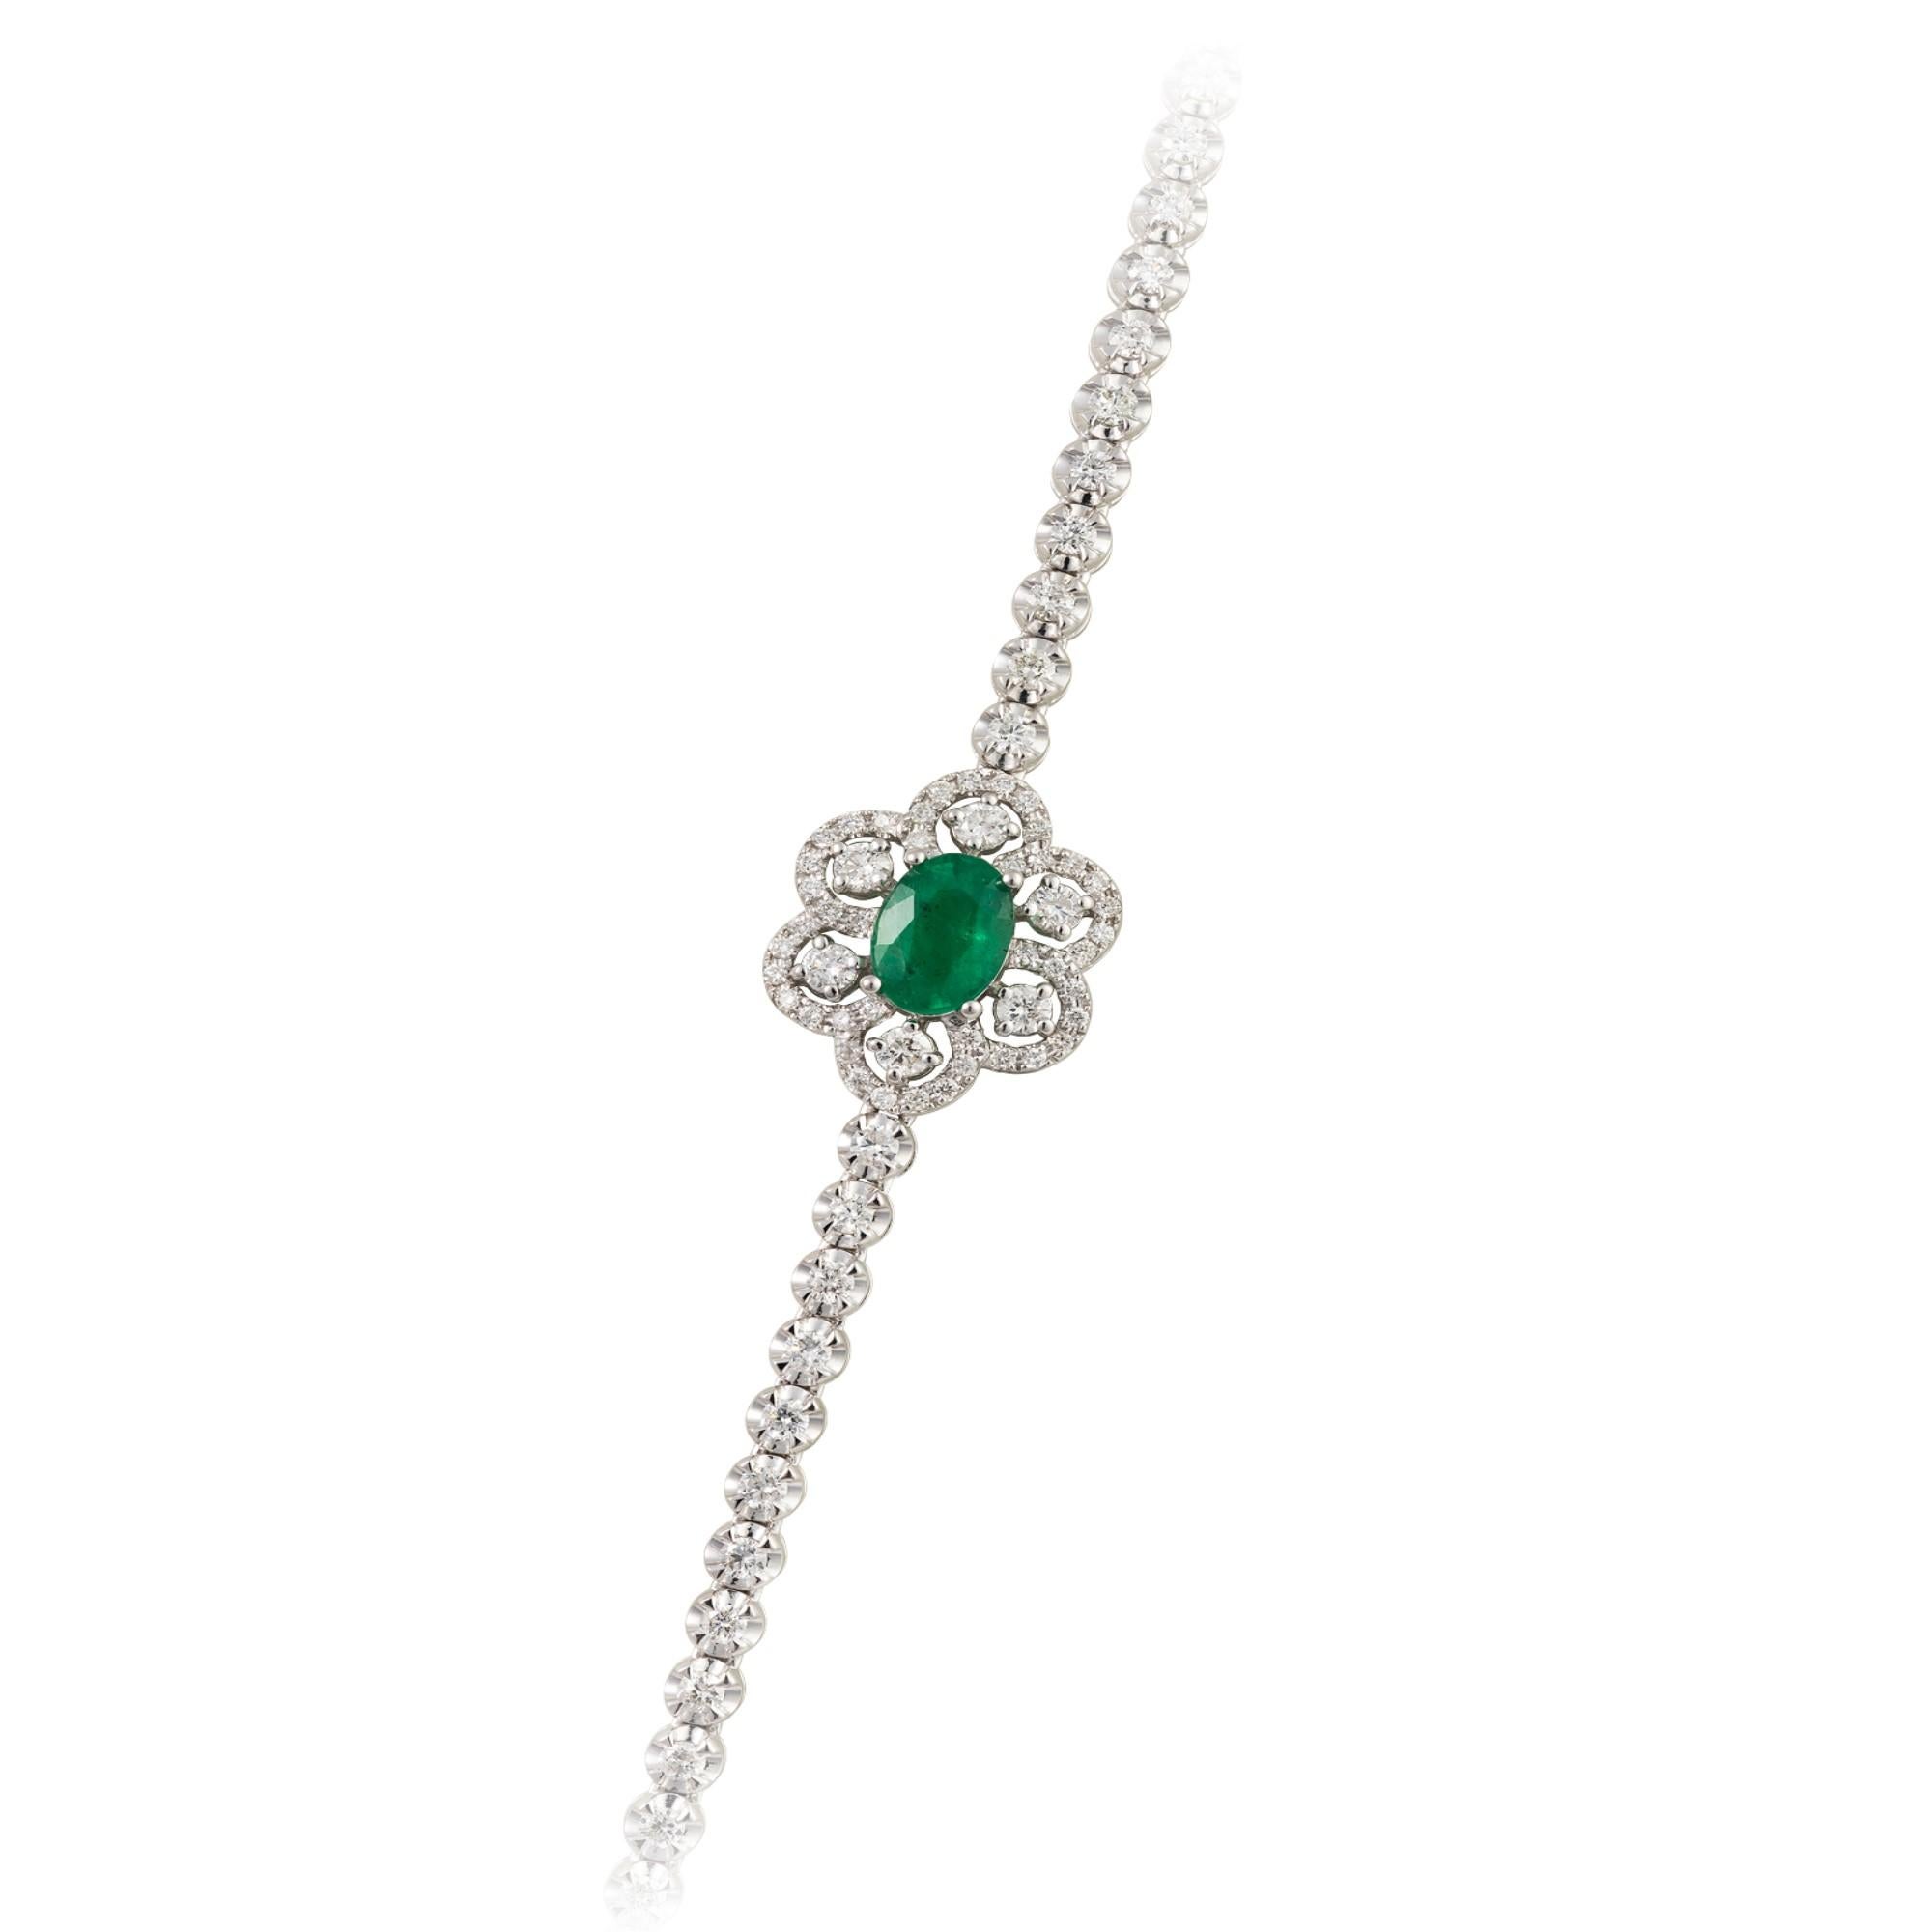 Eine seltene 18KT Weißgold Smaragd-Diamant-Halskette. Halskette besteht aus fein gefassten glitzernden wunderschönen langen Smaragd Halskette mit funkelnden Diamanten verziert!!! Die Smaragde und Diamanten sind von exquisiter und feiner Qualität.